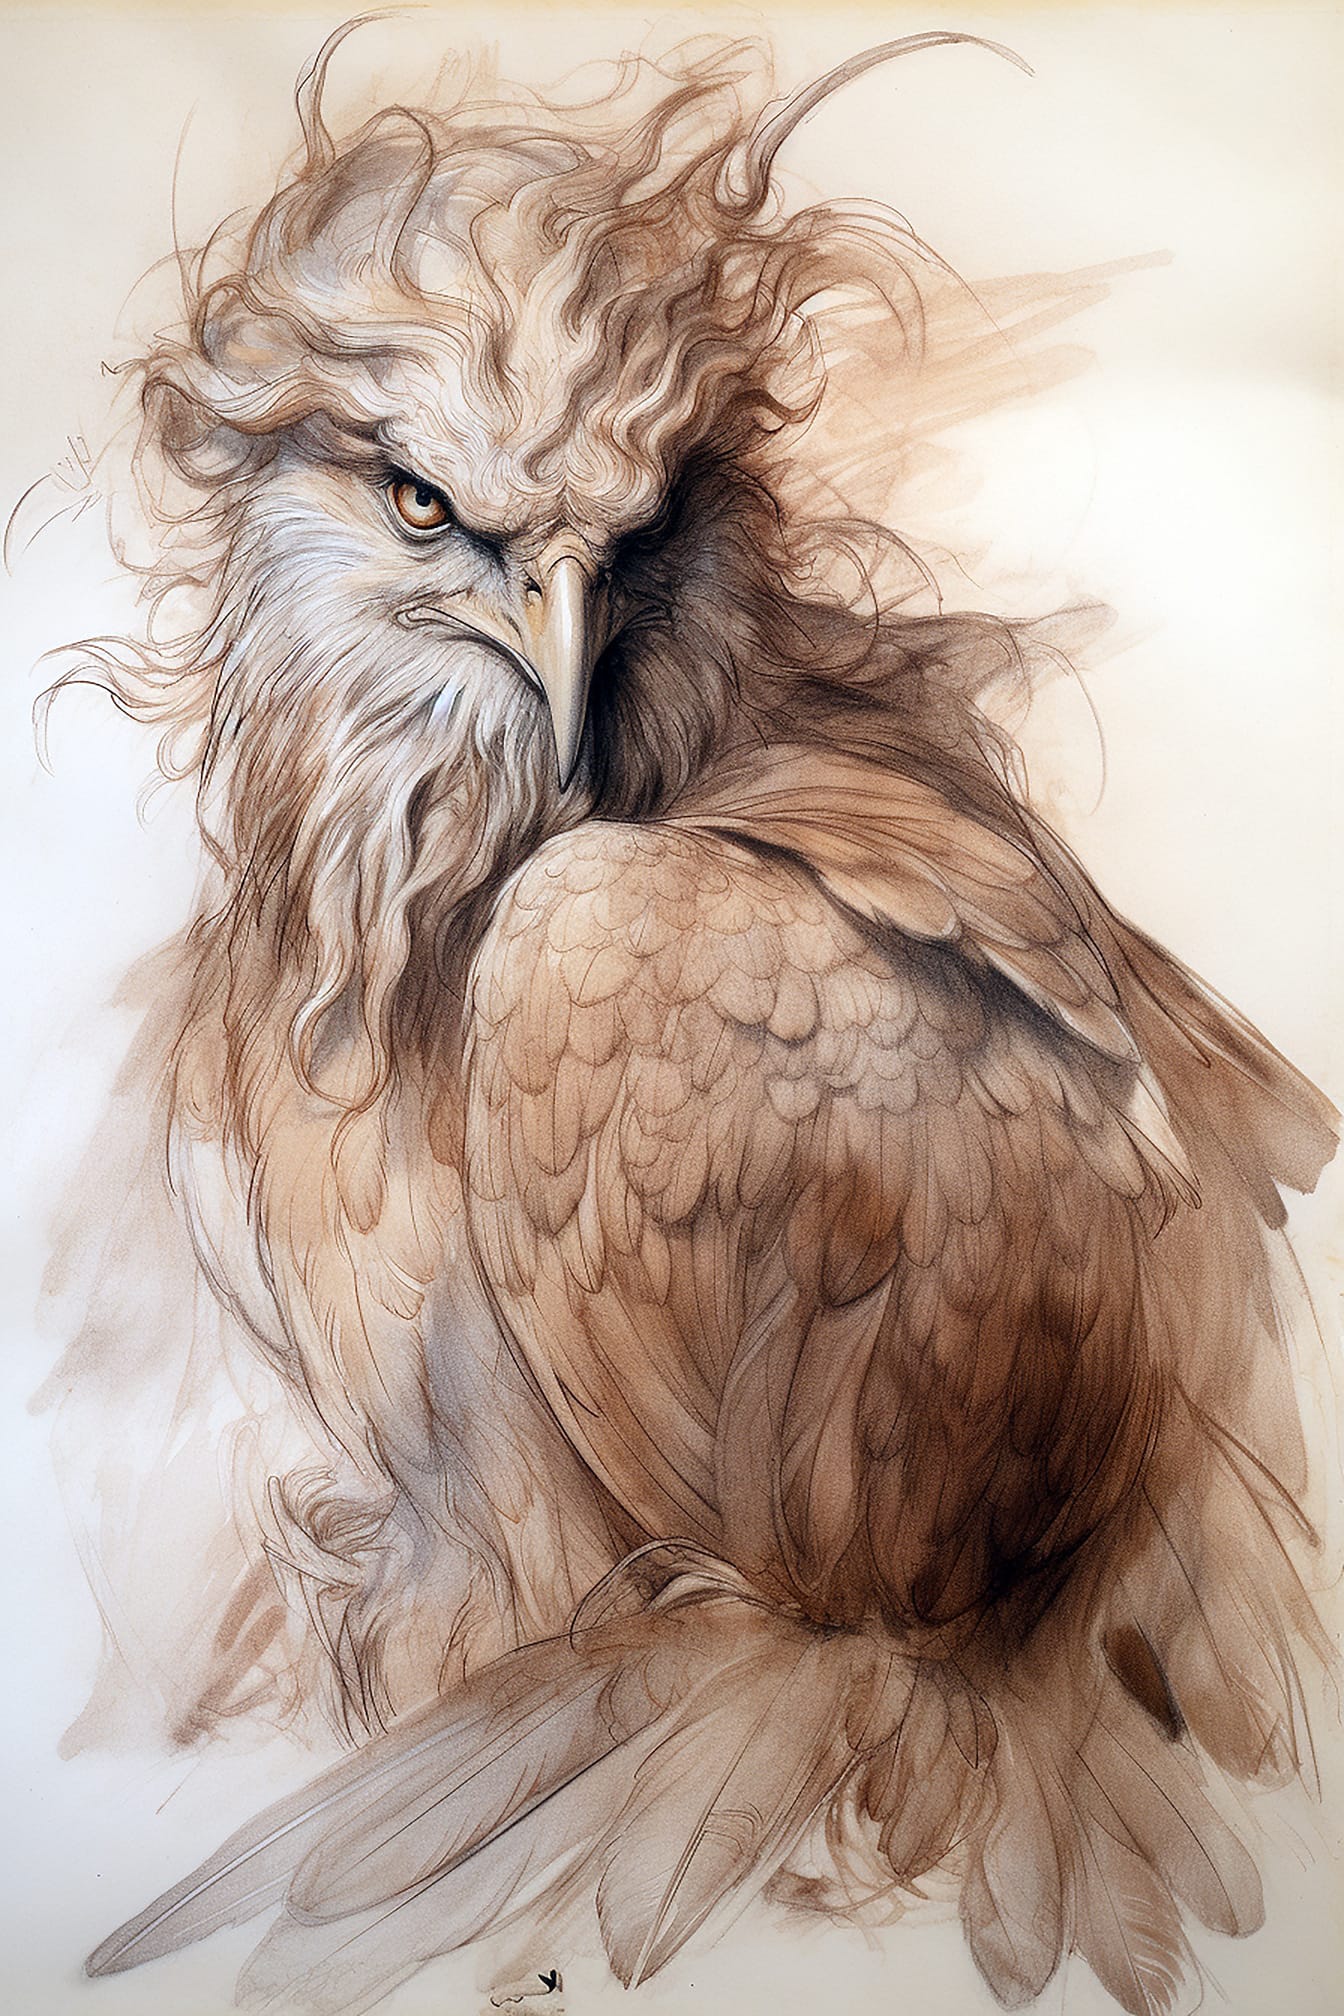 鹰的艺术品图画与浅棕色图形插图